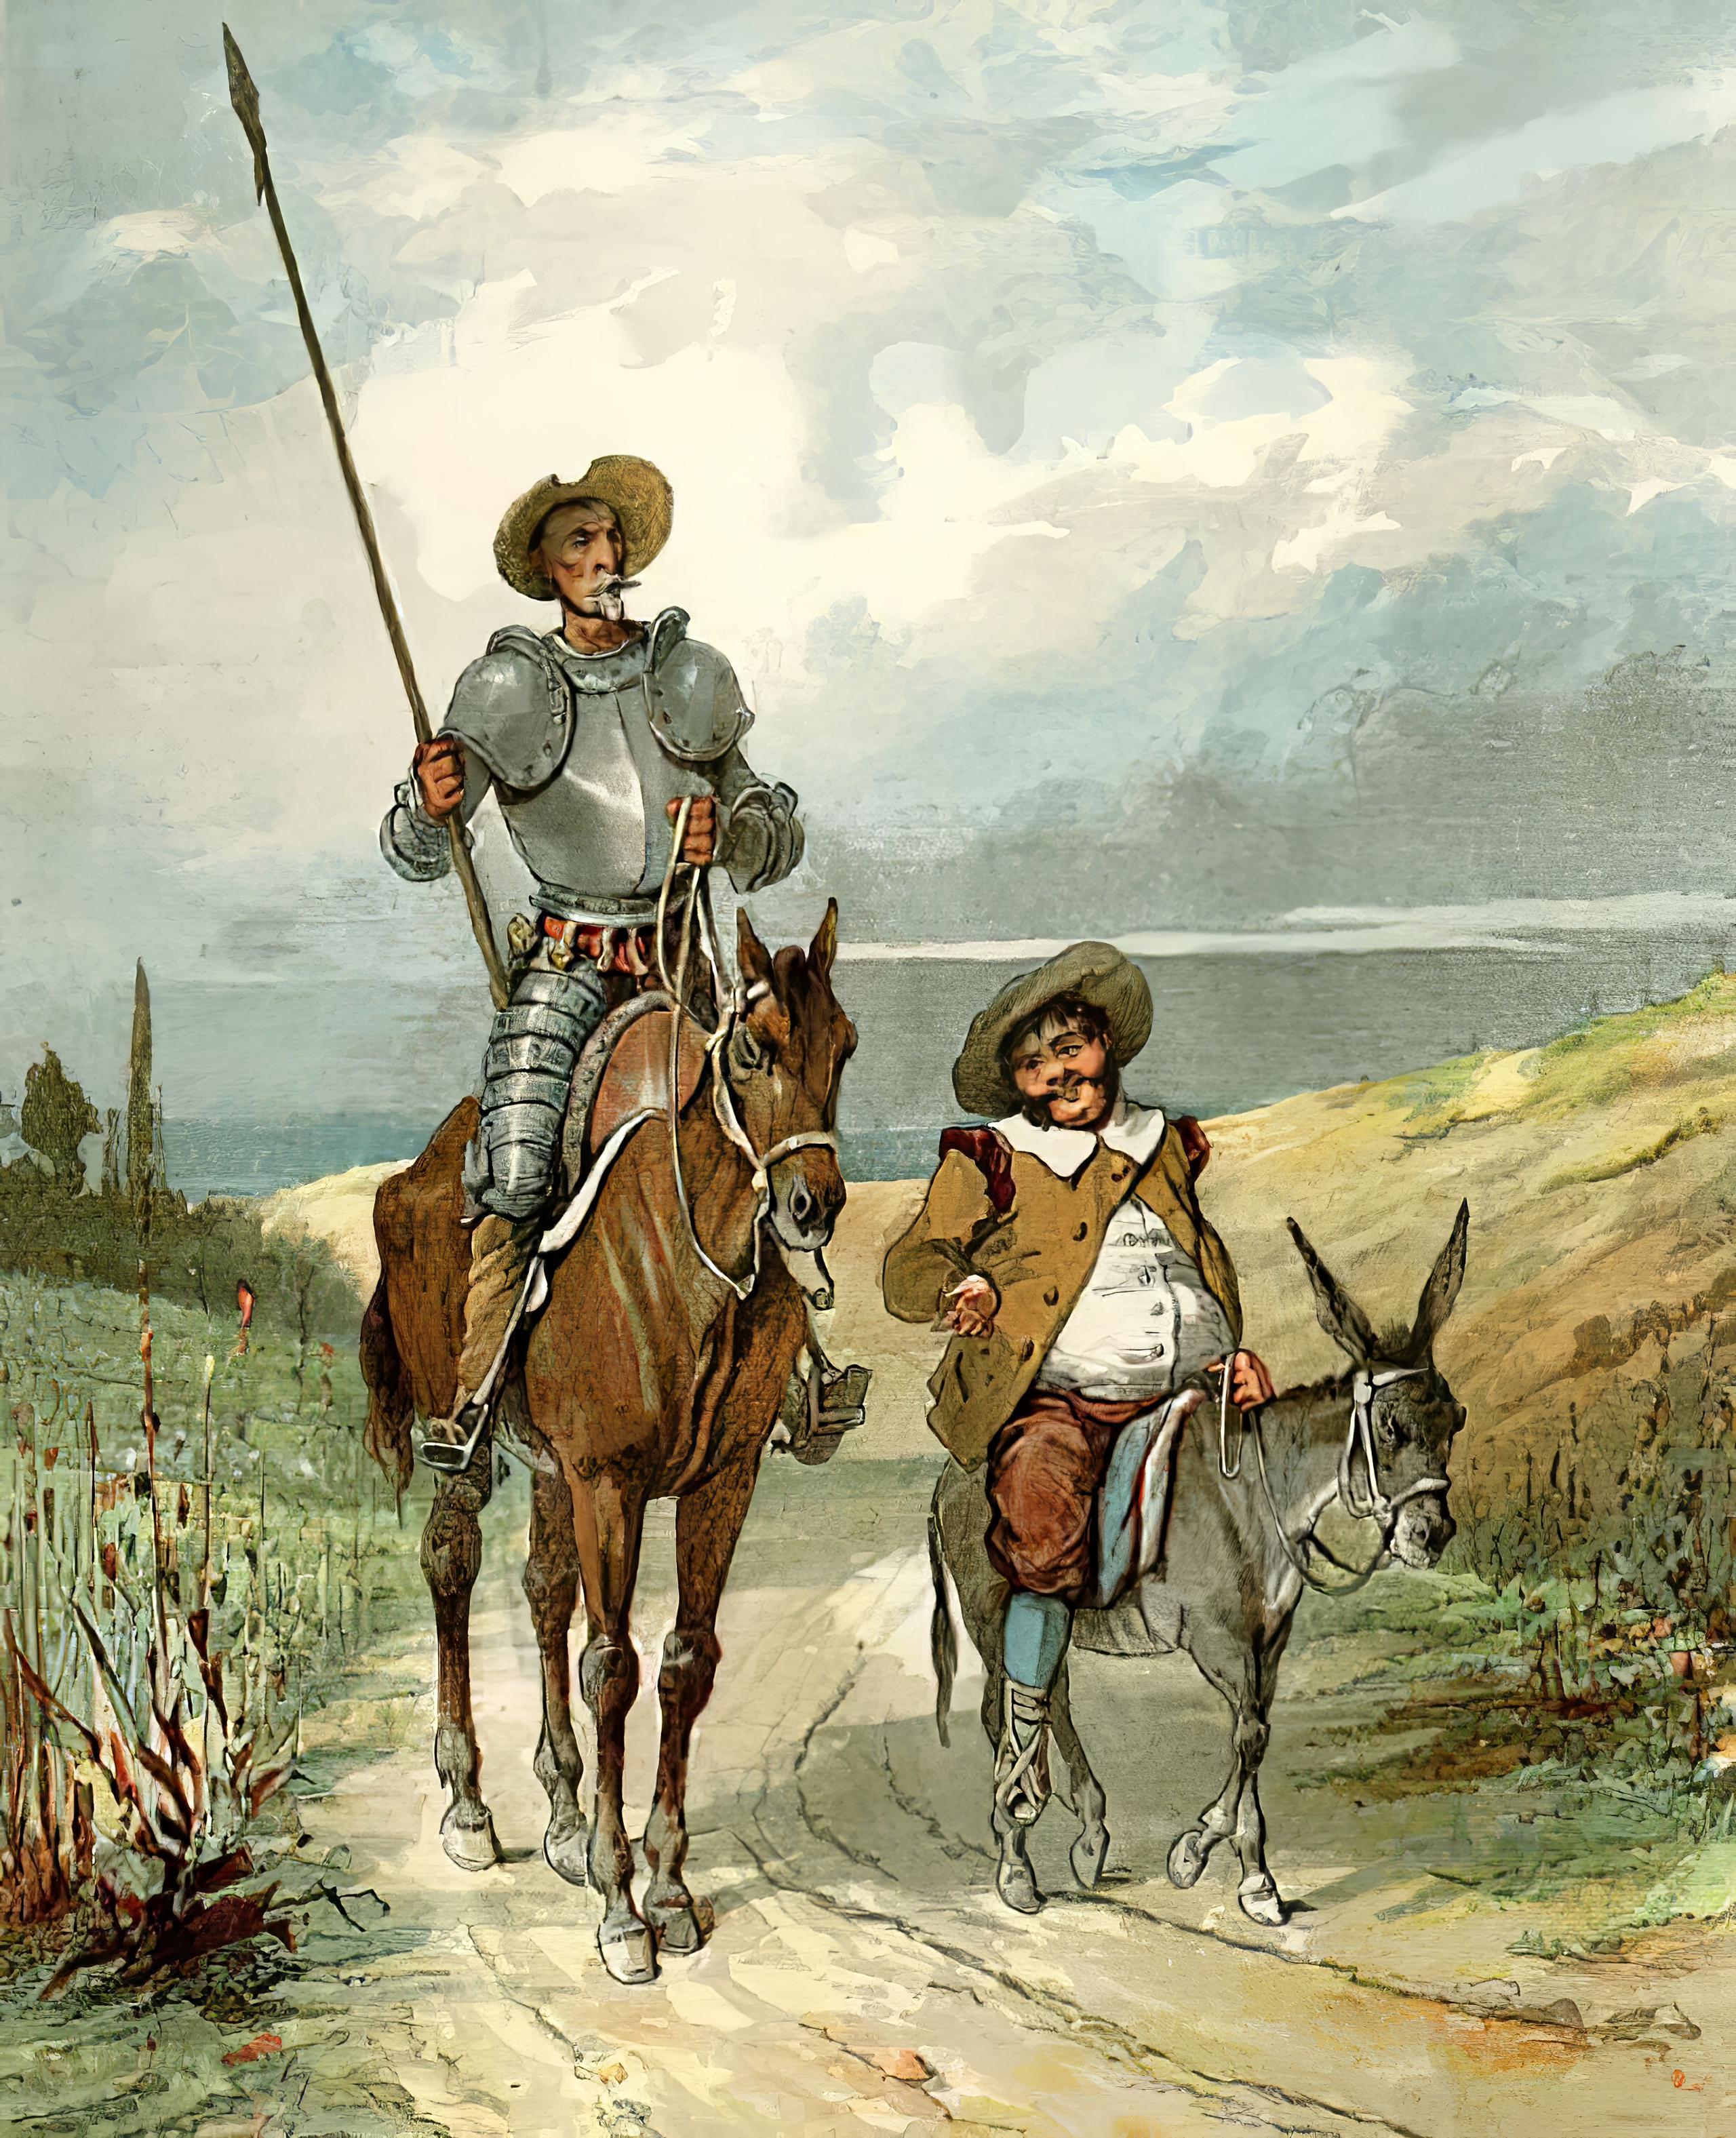 Book Don Quixote of La Mancha in Italian